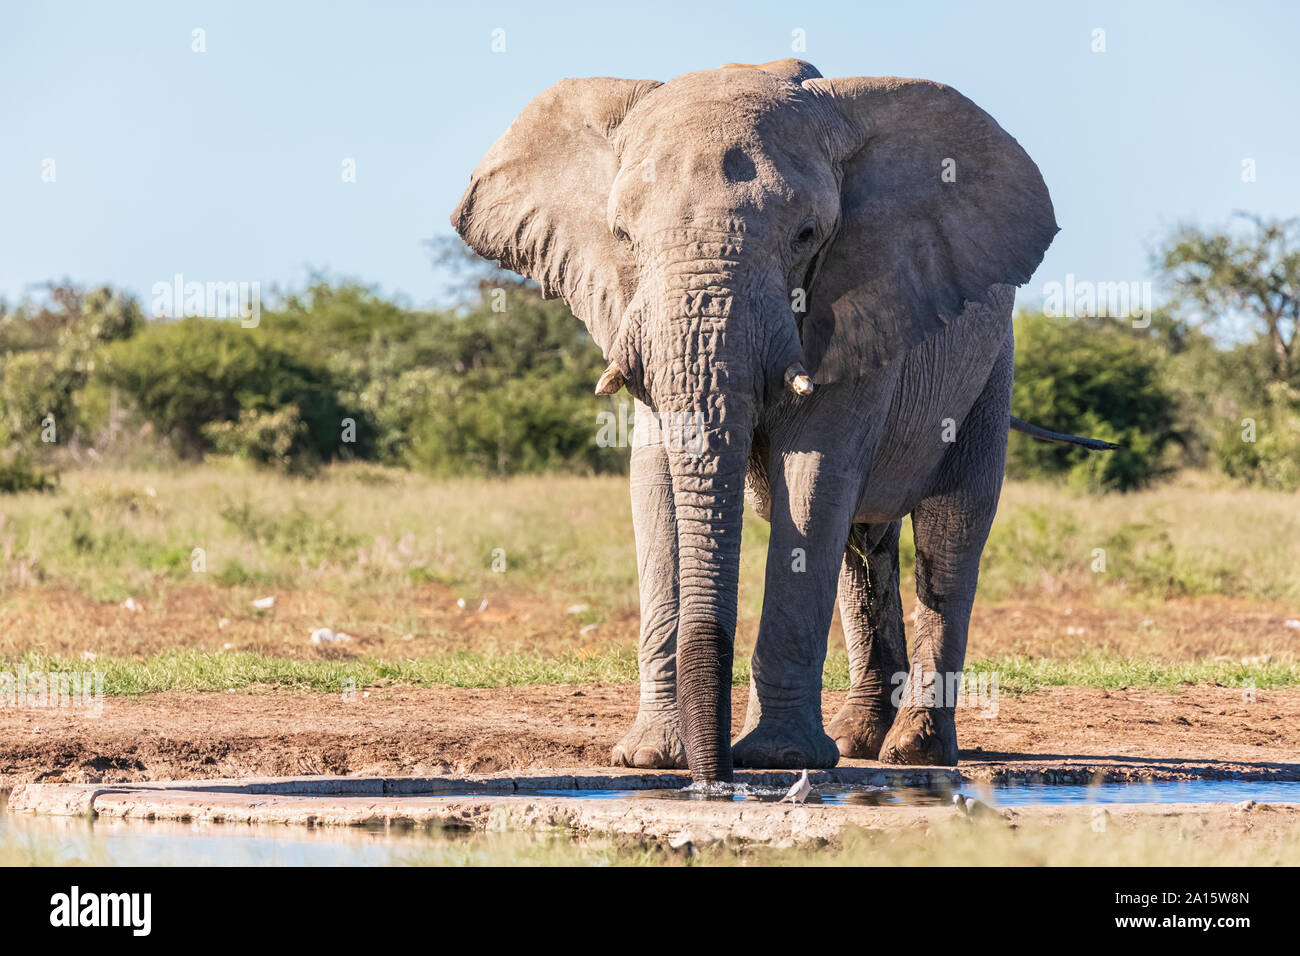 Namibia, Etosha National Park, African Elephant at waterhole Stock Photo